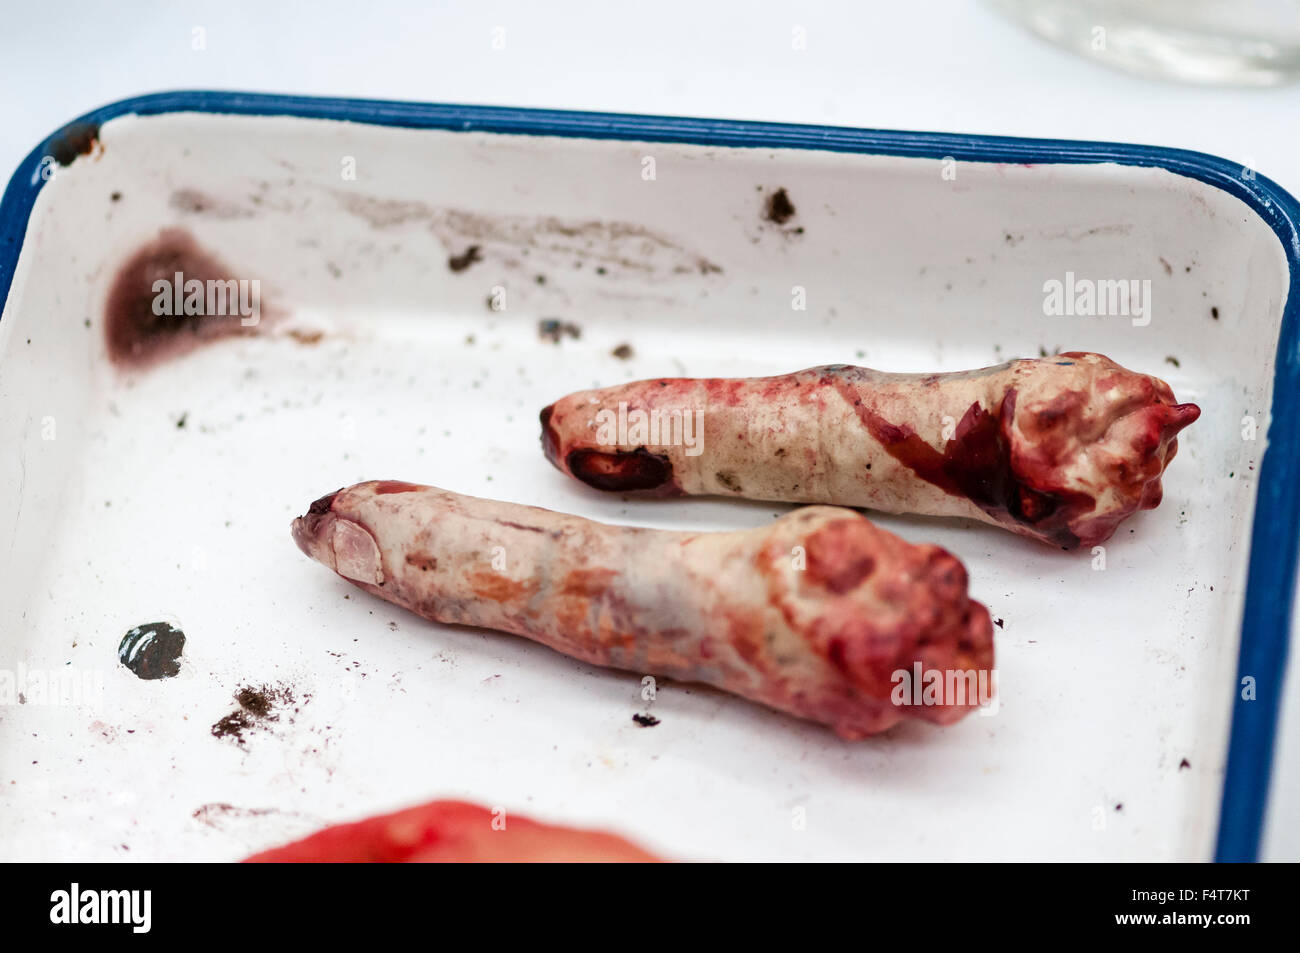 Abgetrennten Fingern, das Ergebnis der eine improvisierte Explosive Gerät (IED), in einer schmutzigen emaillierte Schale in eine Armee medizinische Feldlazarett Stockfoto